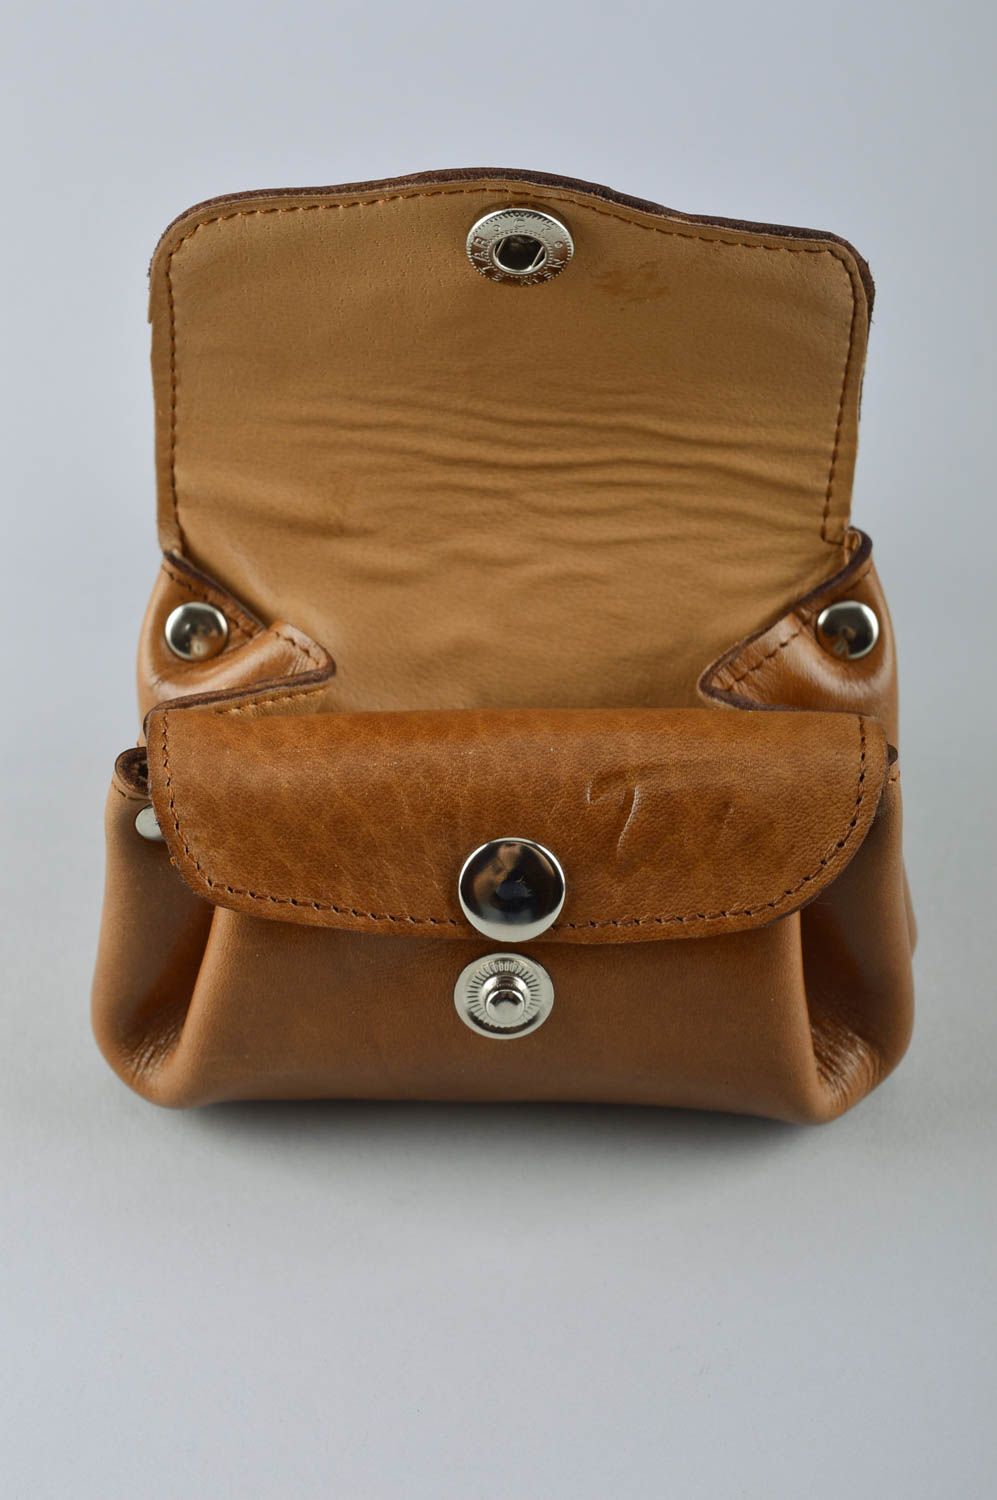 Кожаный кошелек ручной работы аксессуар из кожи красивый подарок женщине фото 3